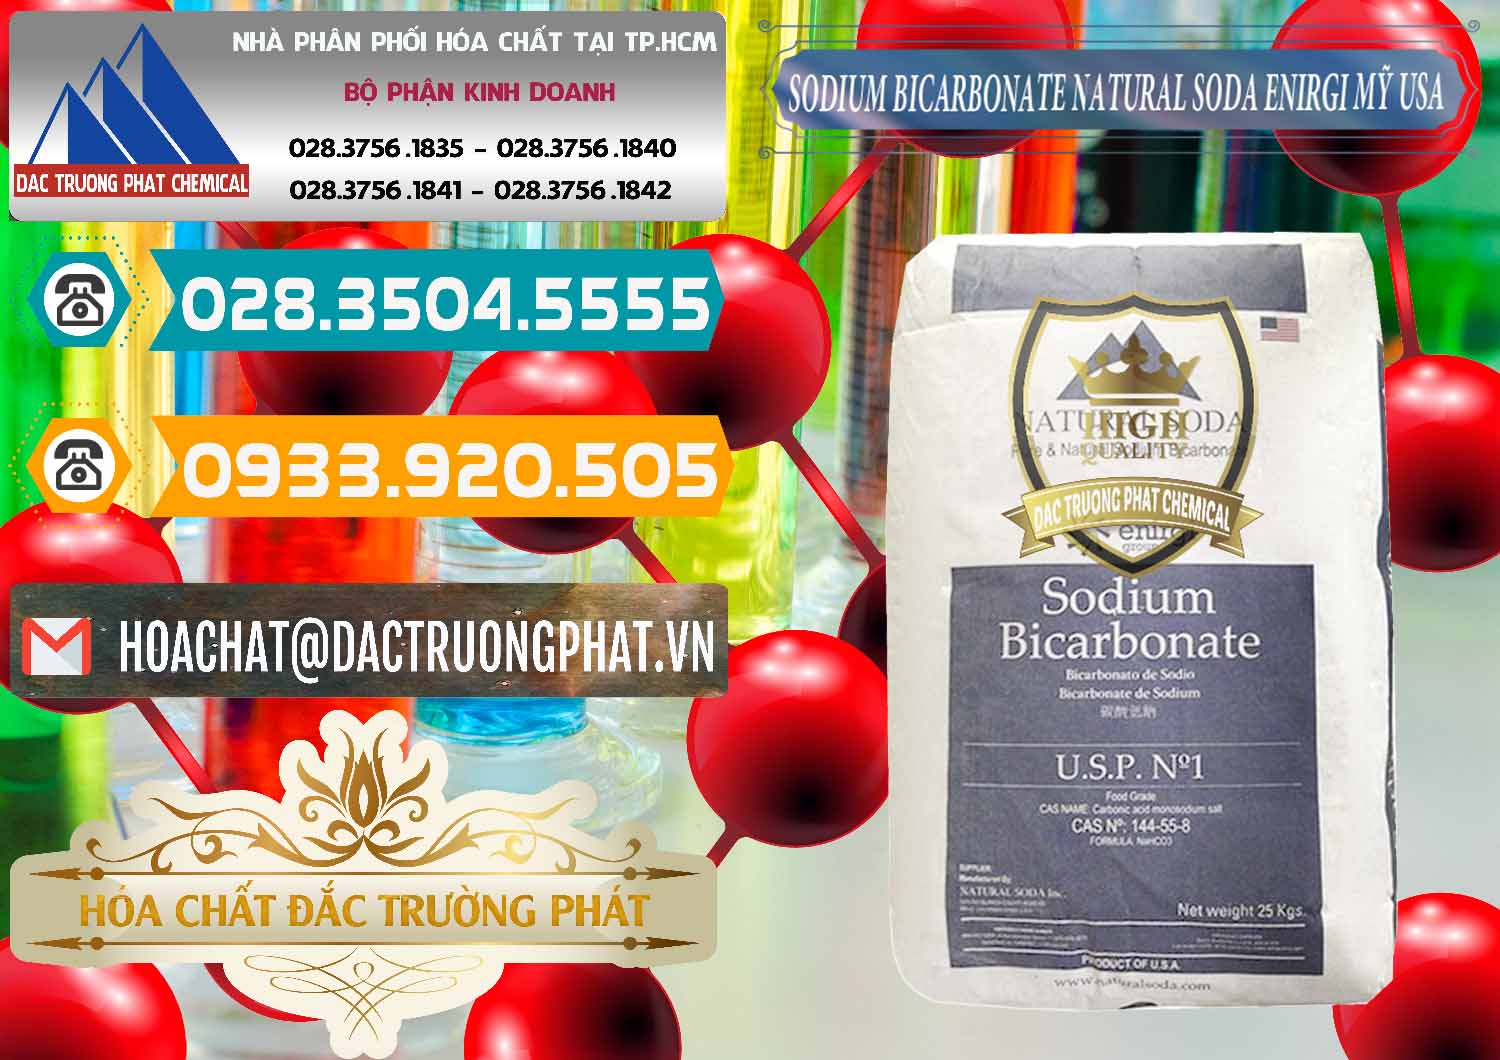 Đơn vị bán _ cung cấp Sodium Bicarbonate – Bicar NaHCO3 Food Grade Natural Soda Enirgi Mỹ USA - 0257 - Nơi chuyên cung cấp ( kinh doanh ) hóa chất tại TP.HCM - congtyhoachat.vn